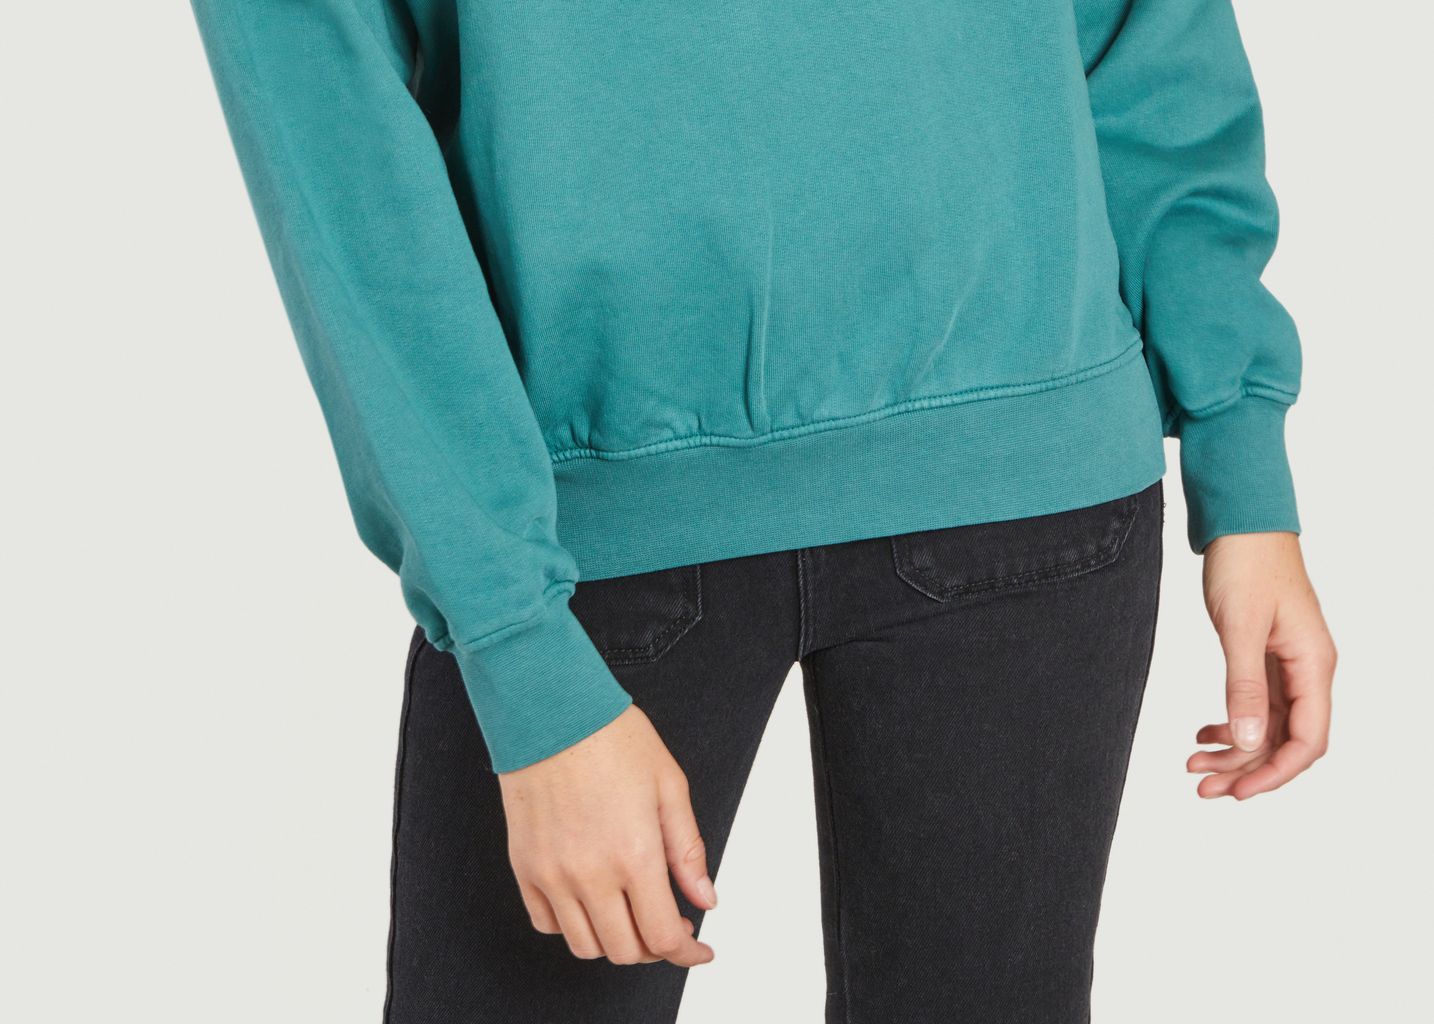 Sweatshirt aus Bio-Baumwolle in Übergröße - Colorful Standard